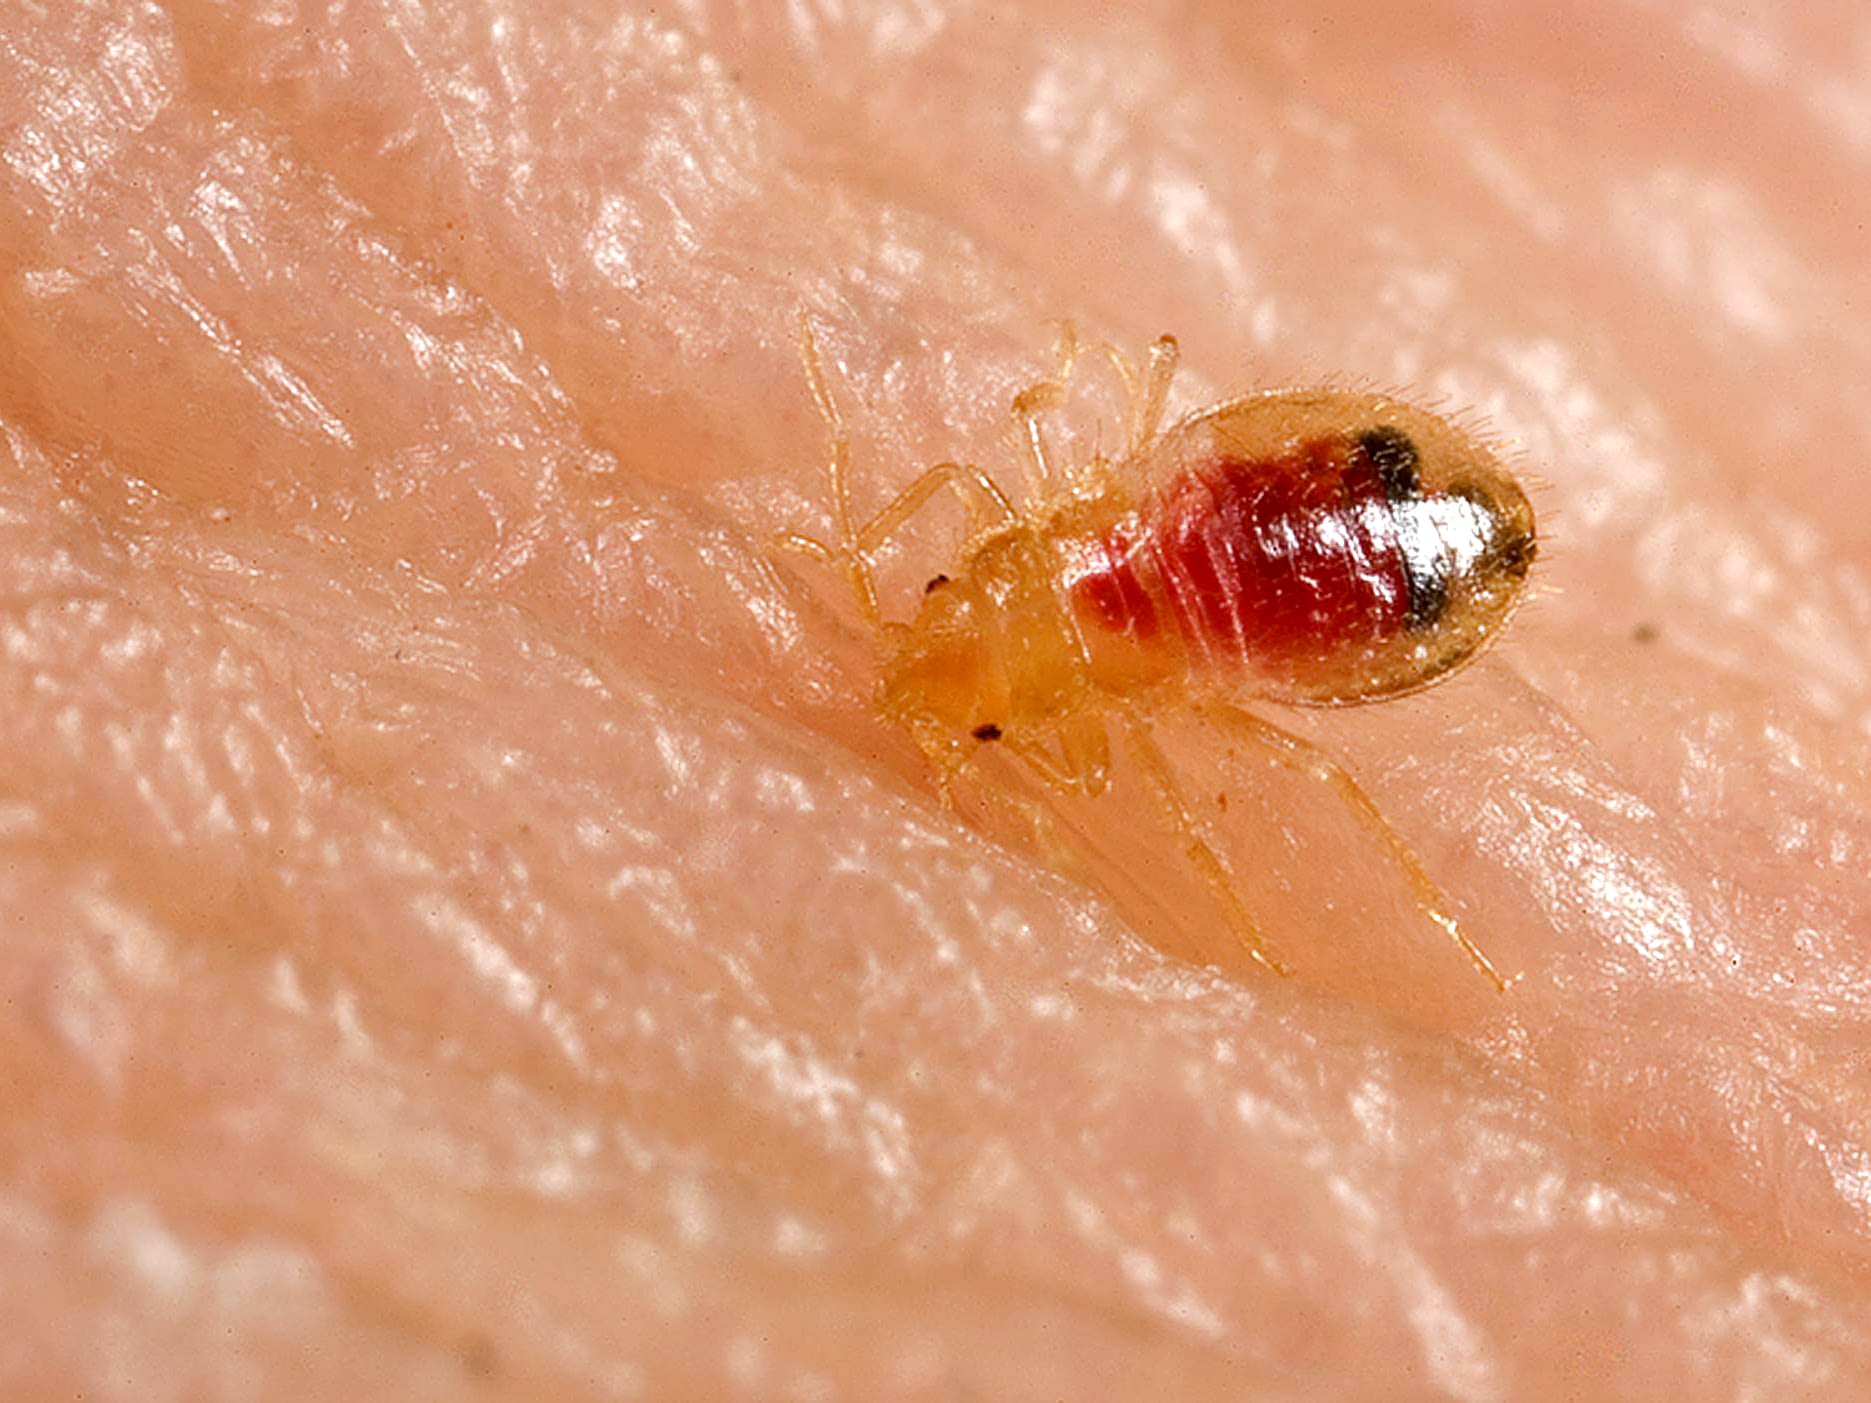 bedbug biting a human